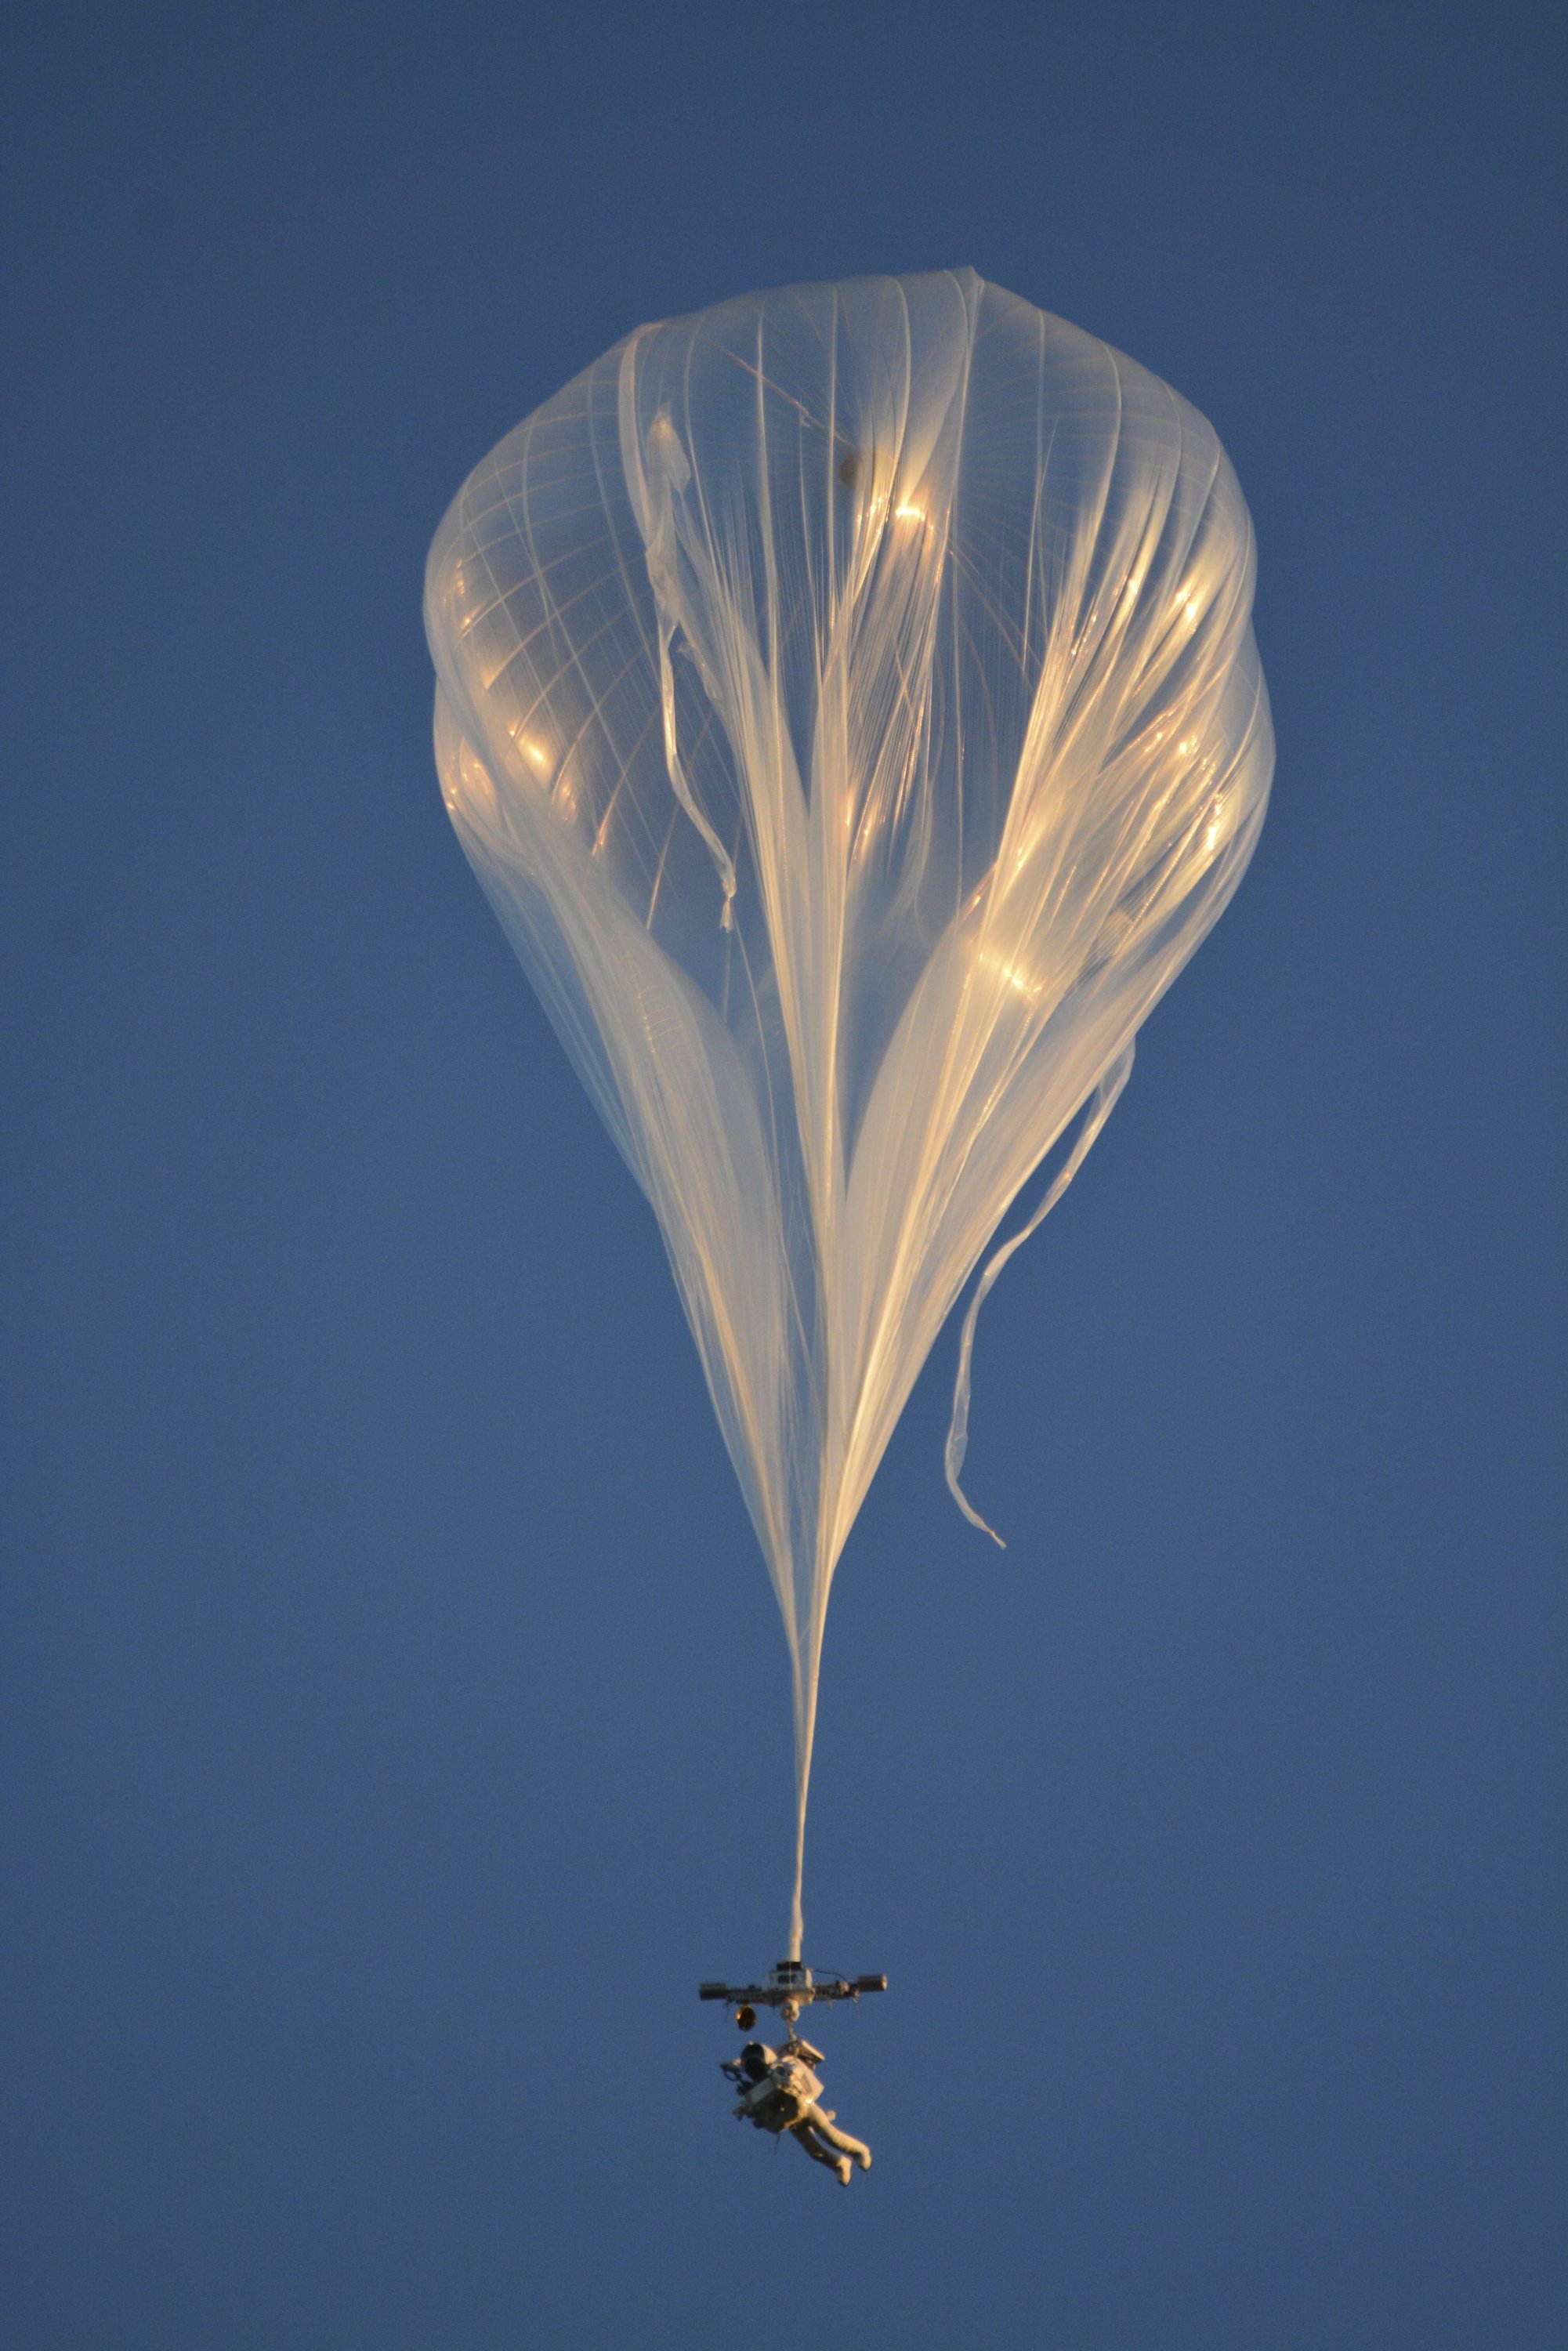 Ganz ohne Medienrummel startete Alan Eustace am 24. Oktober 2014 in Roswell, New Mexico. Zuvor atmete der 57-Jährige vier Stunden lang reinen Sauerstoff, um den Stickstoff aus seinem Blut zu filtern. Mit diesem Helium-Ballon schwebte er bis in 41 Kilometer Höhe.